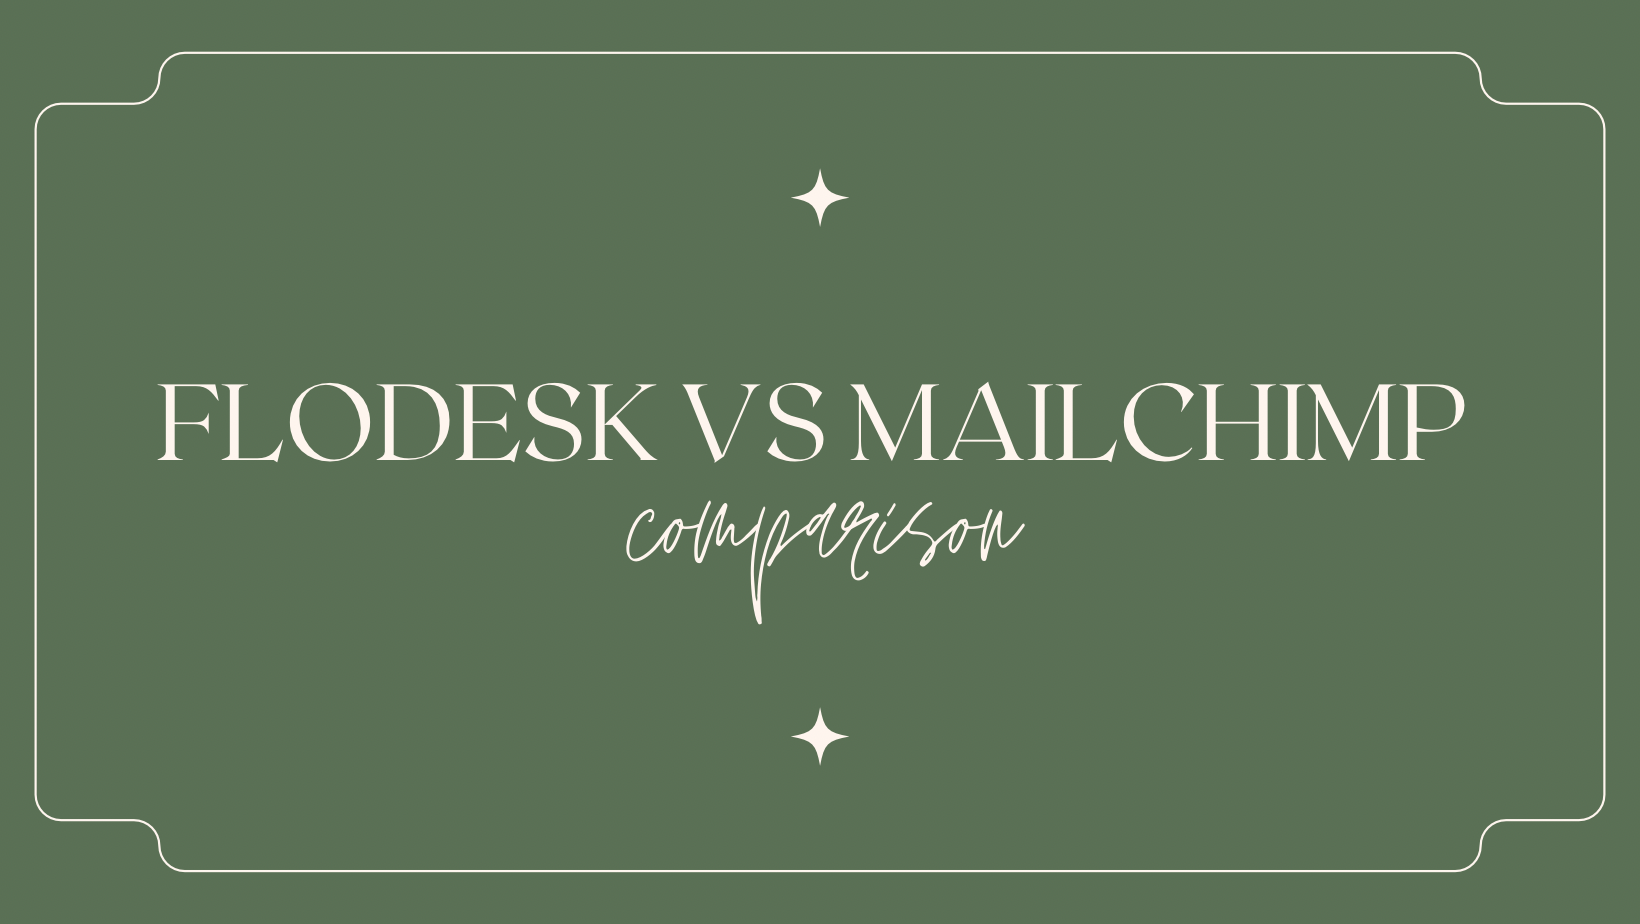 Flodesk vs Mailchimp - A bite-sized comparison